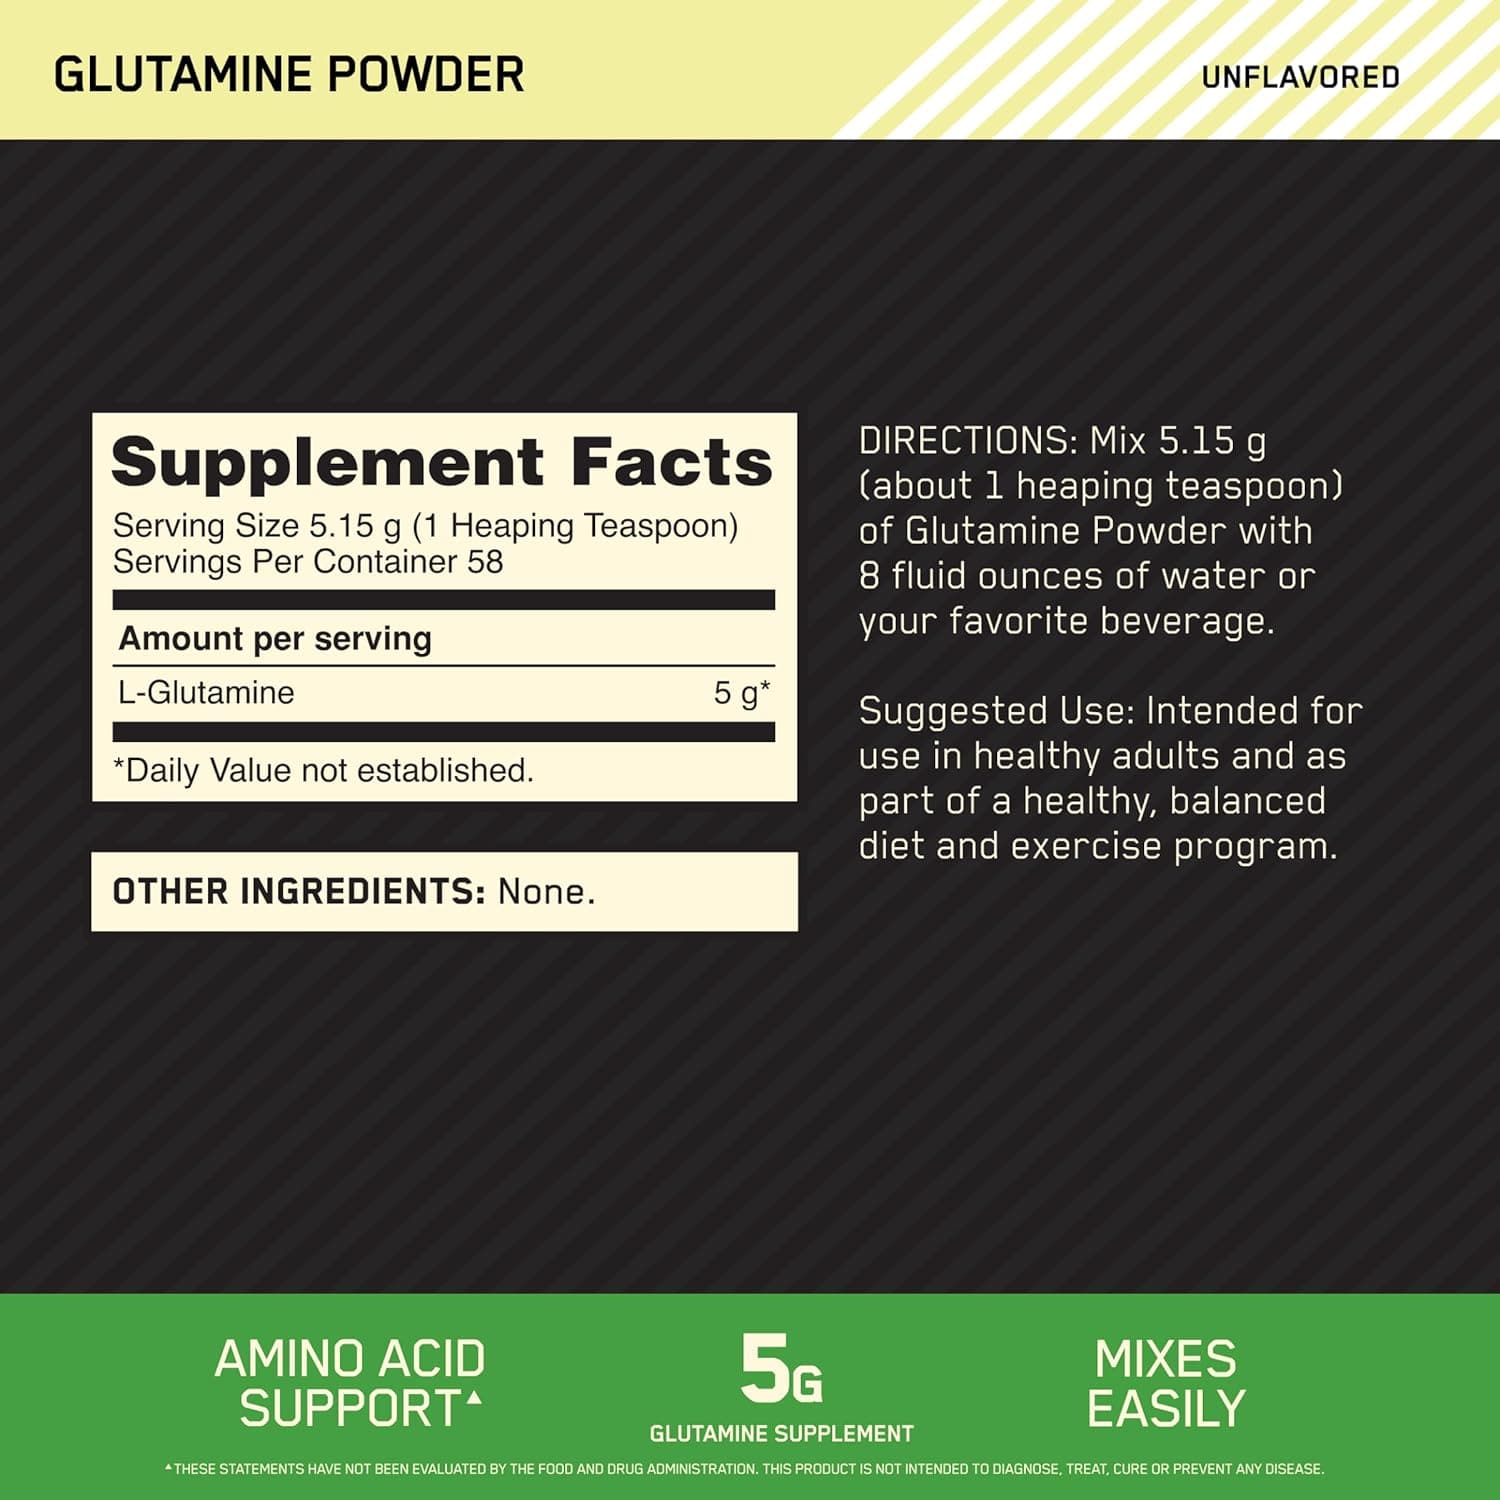 Optimum Nutrition Glutamine Powder for Glutamine Support, Unflavored, 300 Grams